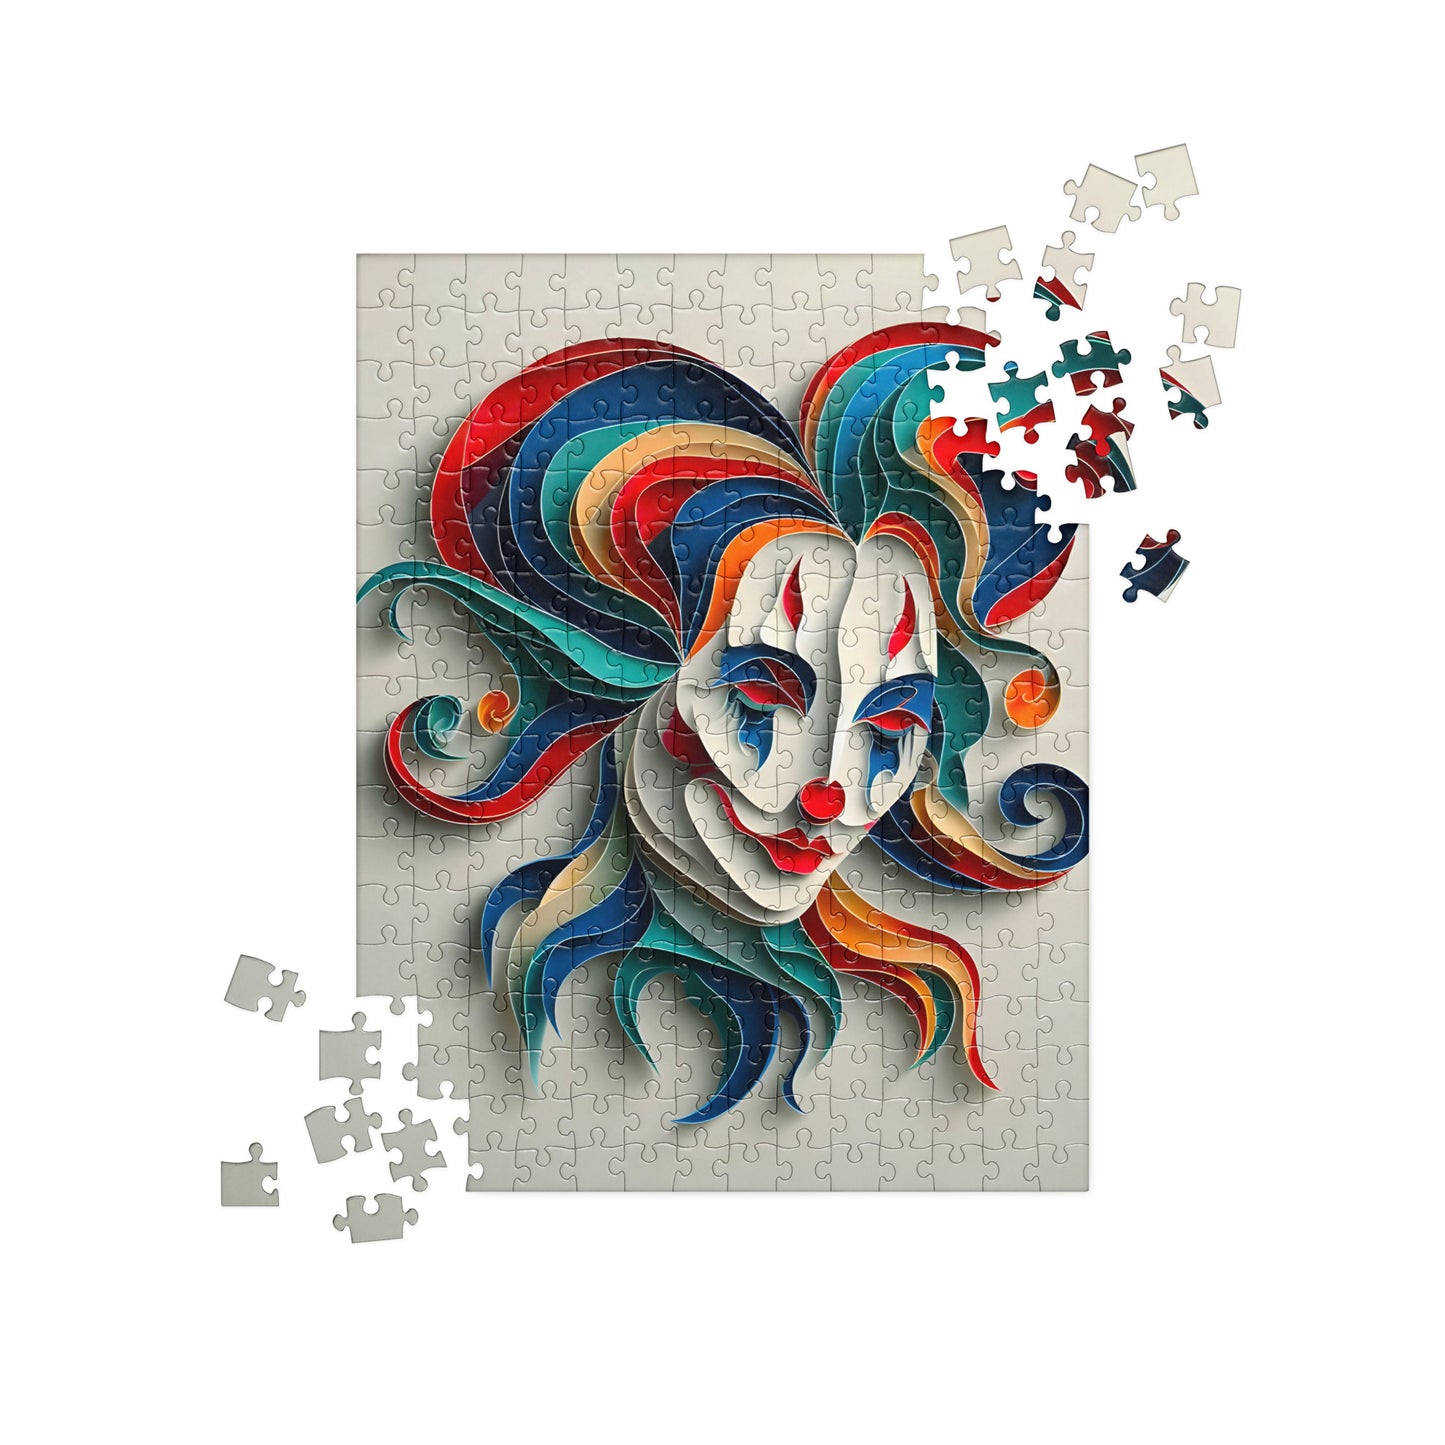 Magical 3D Clown - Jigsaw Puzzle #41